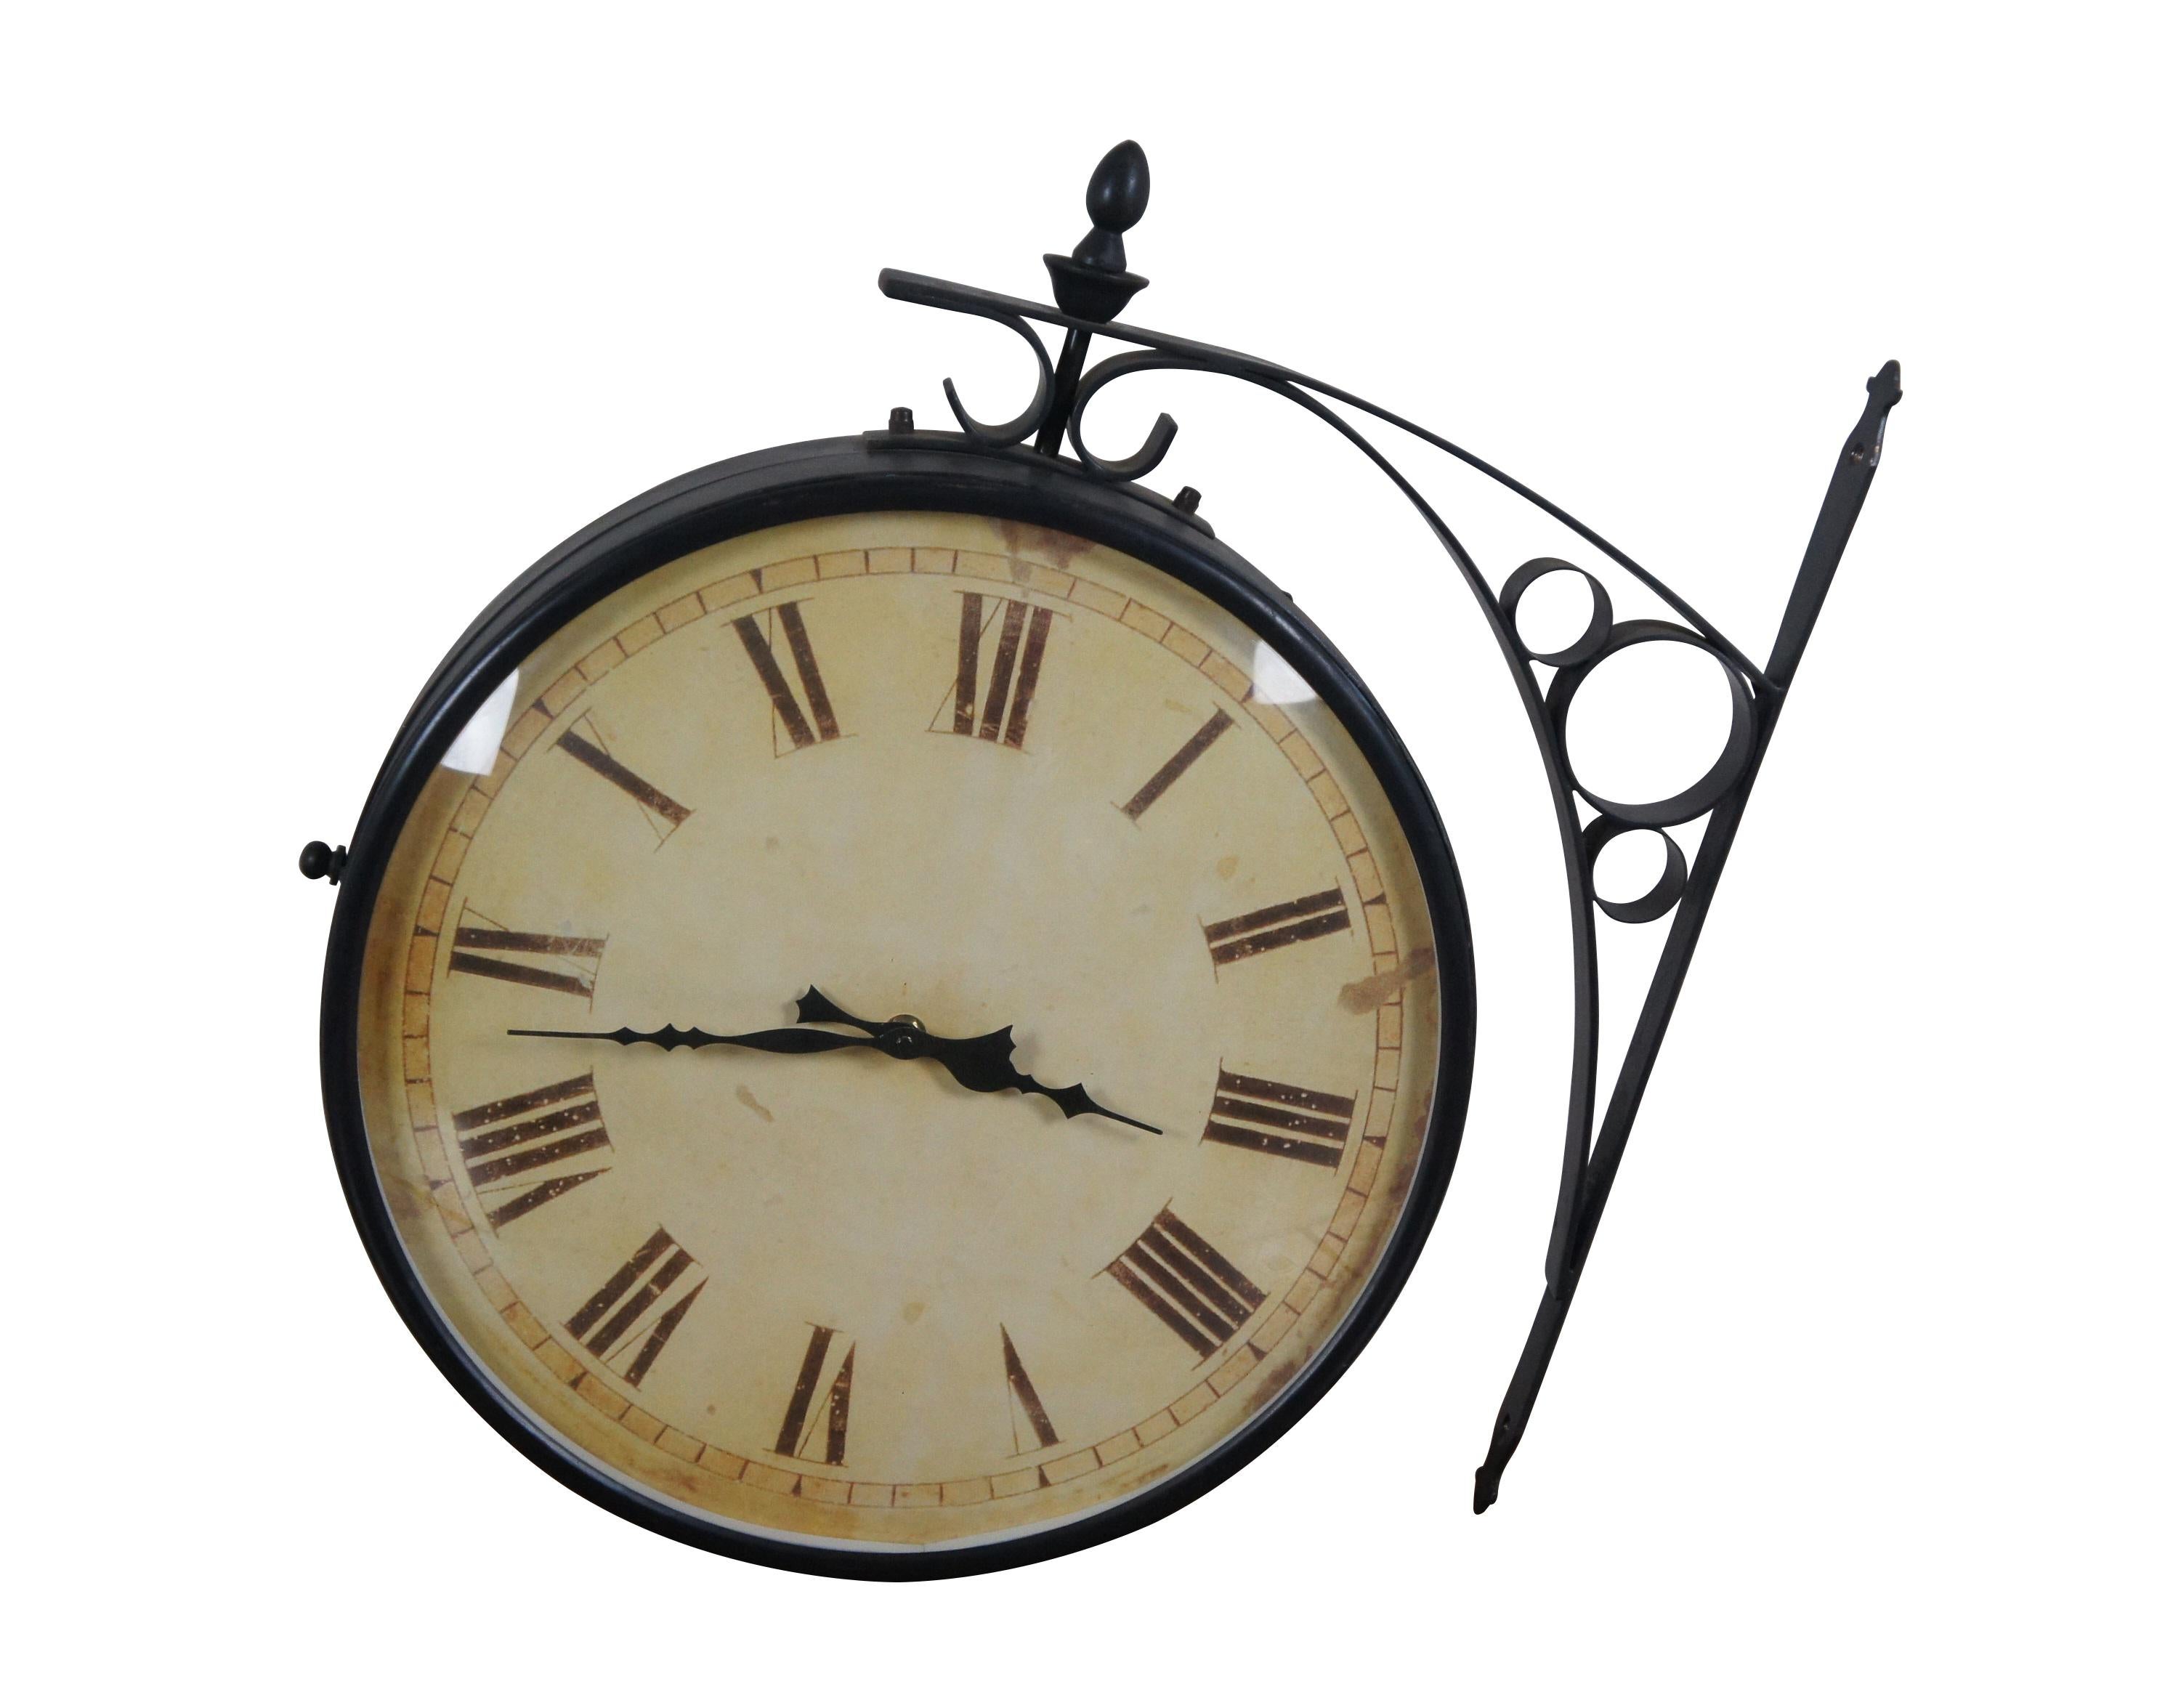 Horloge ferroviaire double face de la fin du XXe siècle, inspirée de la célèbre horloge de la gare de Victoria, à Londres. Support mural et boîtier en métal forgé, finition bronze foncé. Face imprimée de 14 pouces de diamètre, avec faux relief et